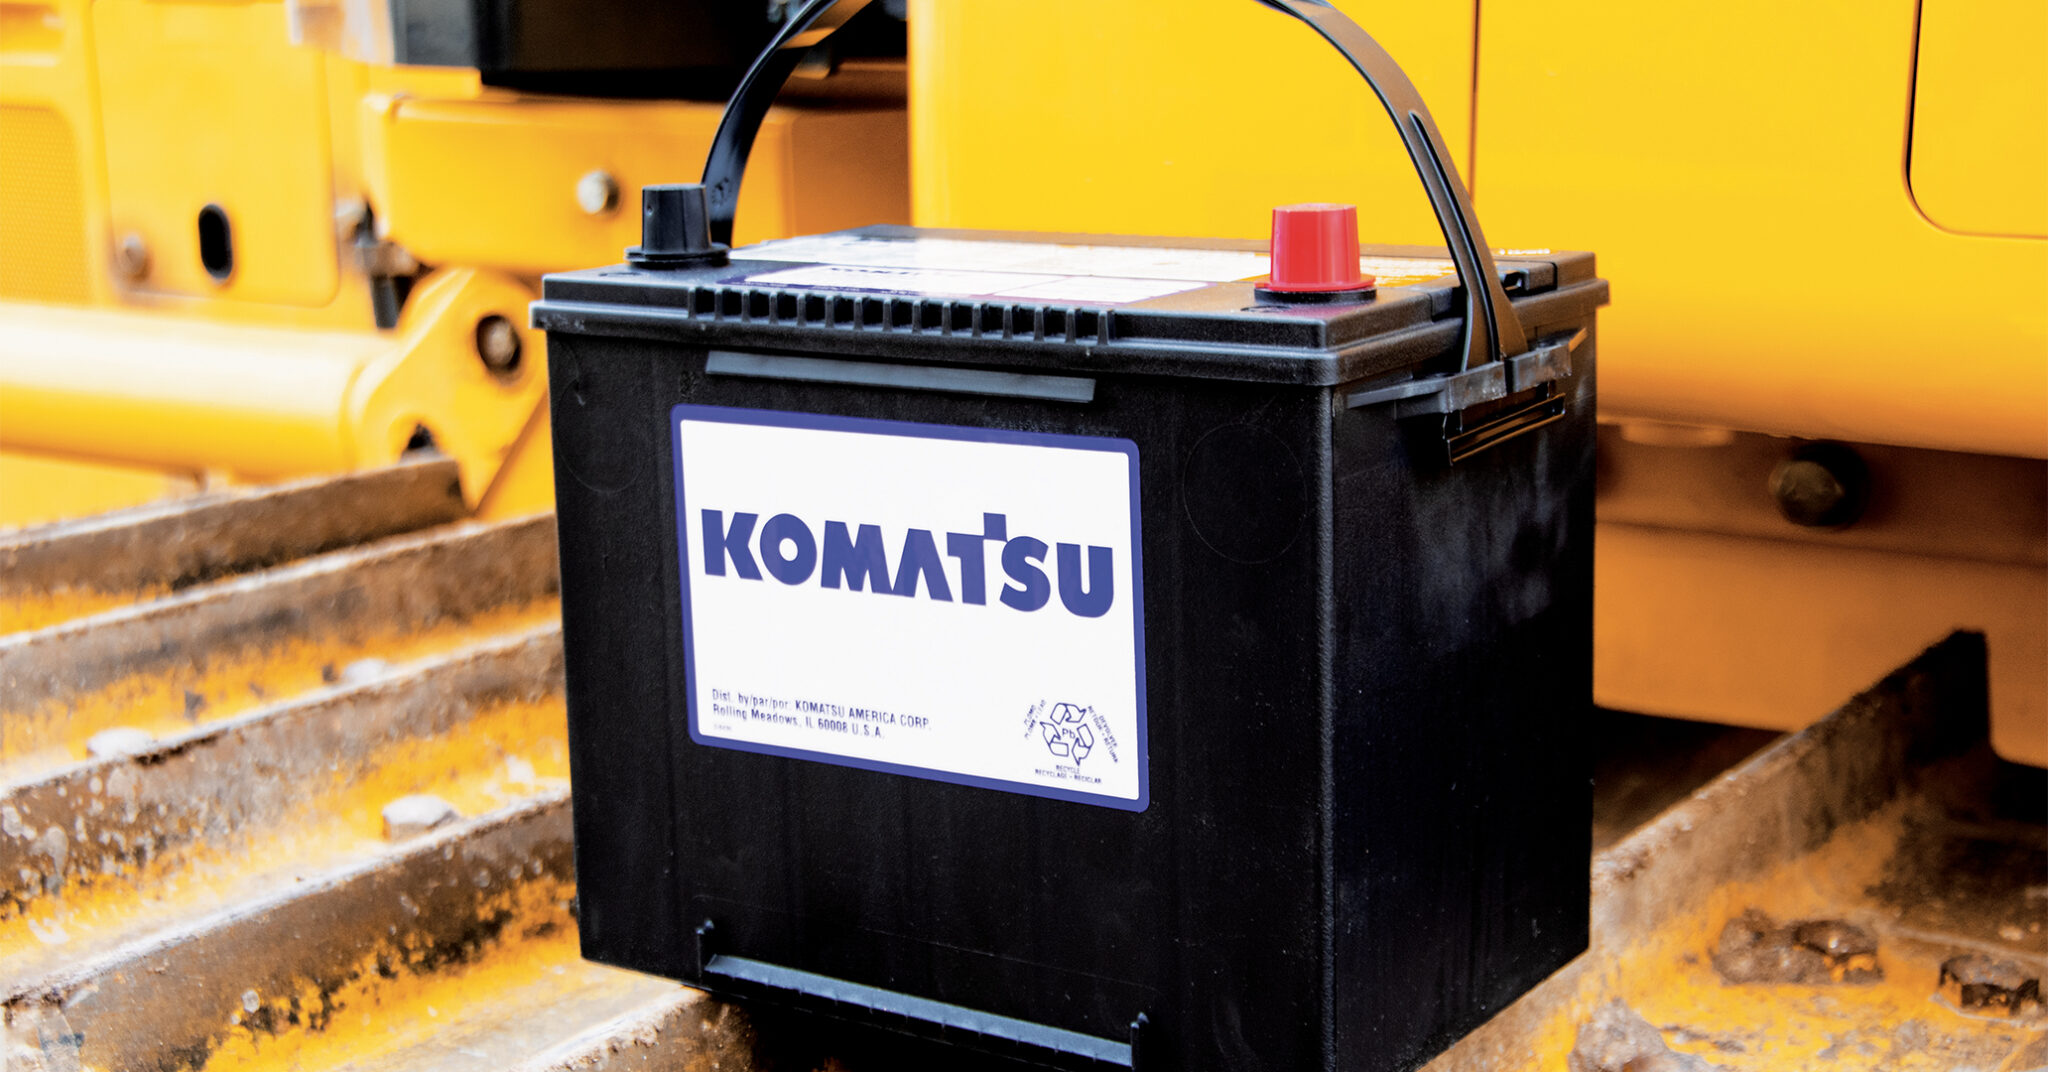 A Komatsu battery